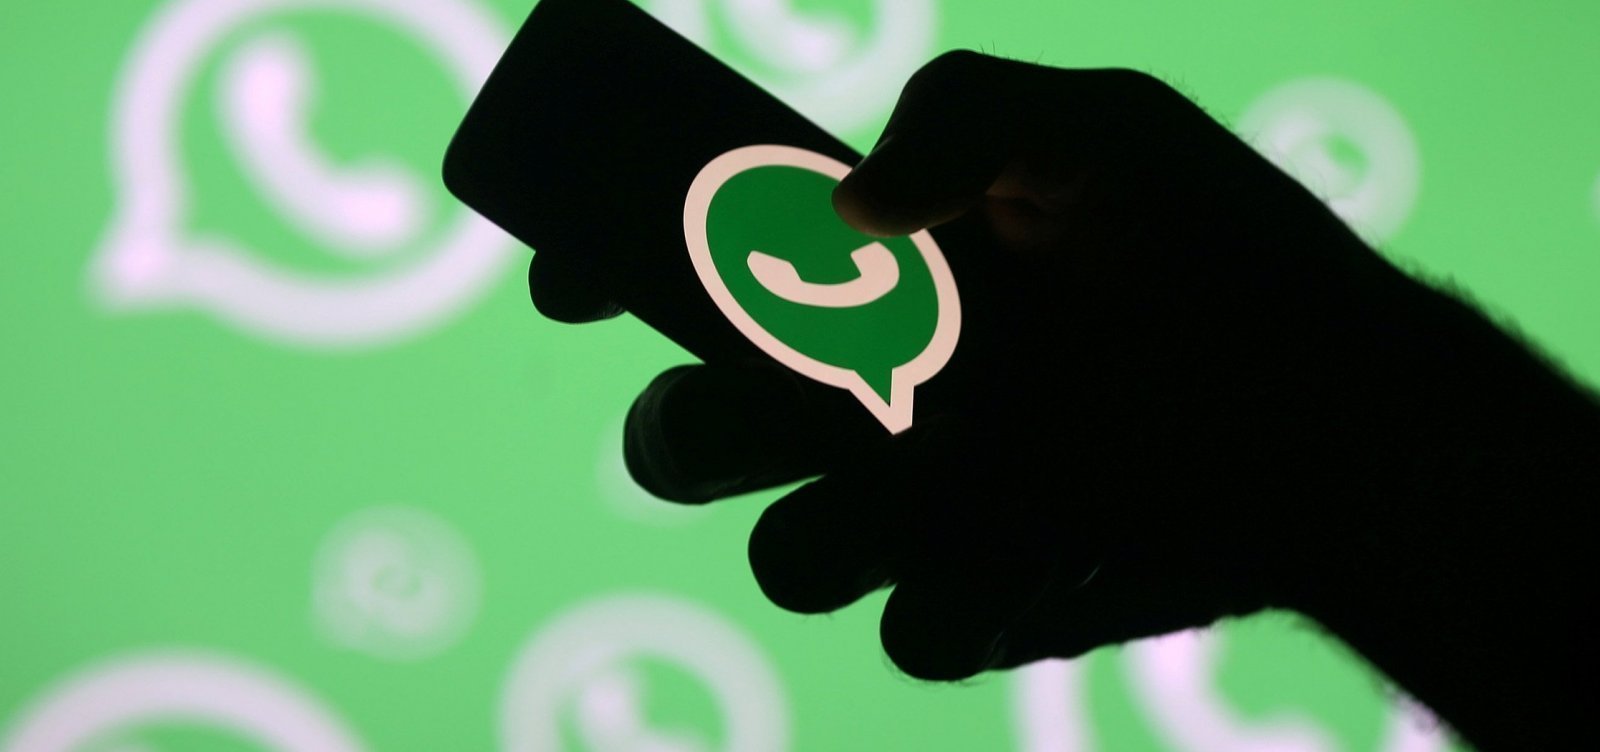 WhatsApp: 43% dos usuários no país afirmam ter sido vítimas de tentativa de golpe